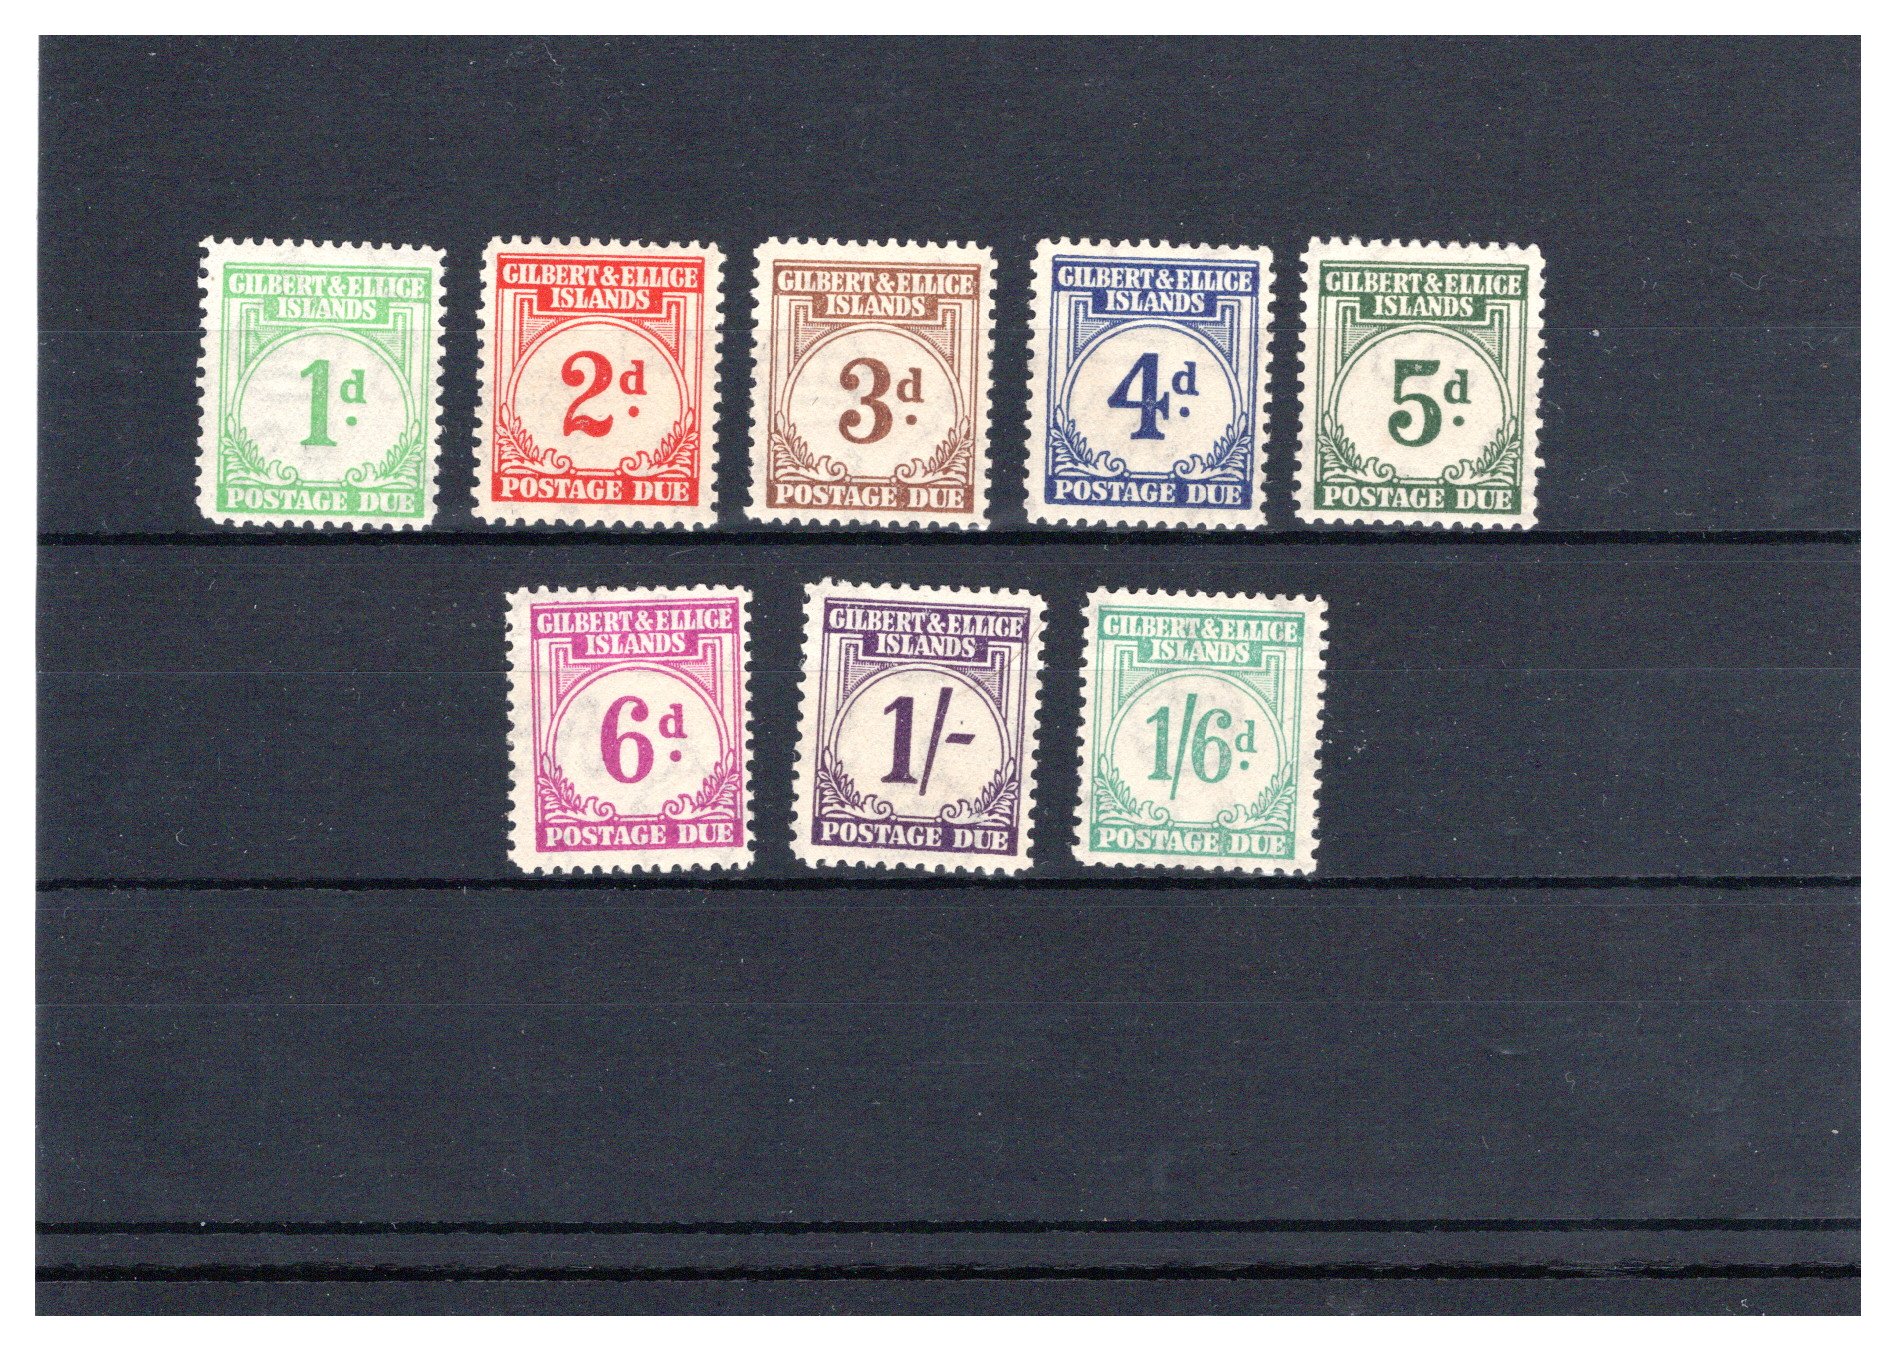 Lot 151 - British Commonwealth Gilbert & Ellice Islands postage stamps -  Georg Bühler Briefmarken Auktionen GmbH Georg Bühler 336 auction